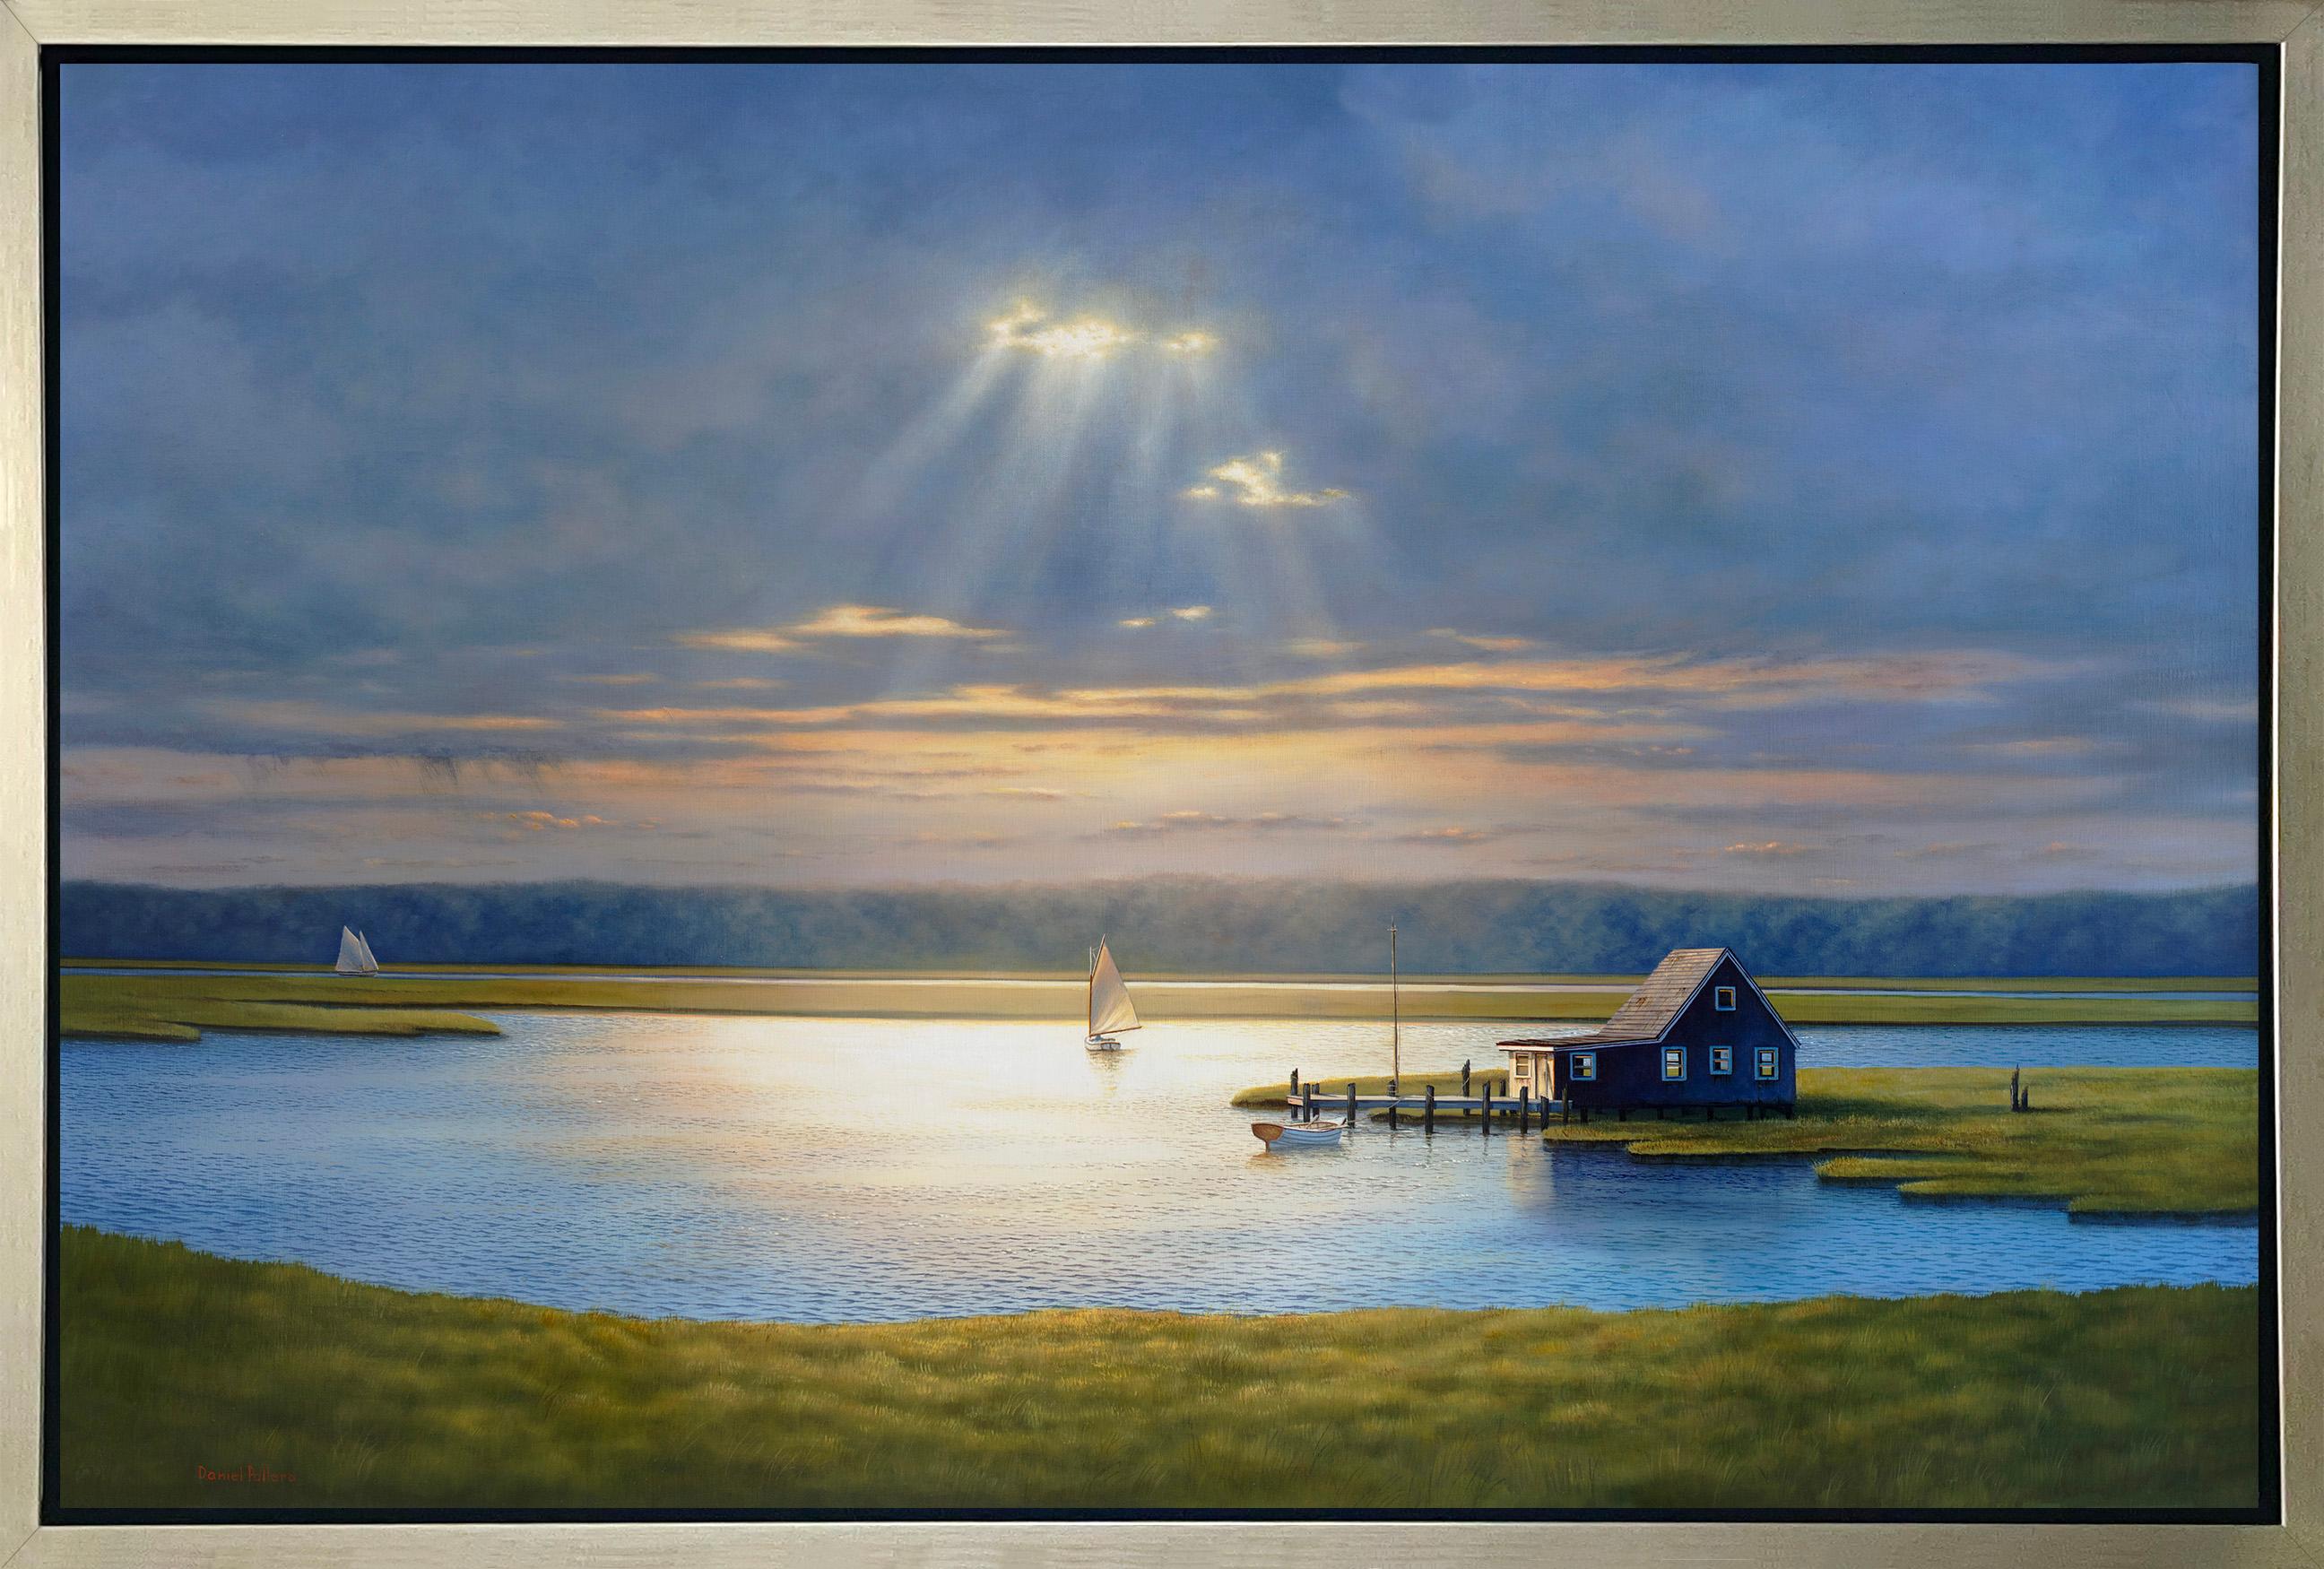 Daniel Pollera Landscape Print – ""Into the Light", gerahmter Giclee-Druck in limitierter Auflage, 30"" x 45""